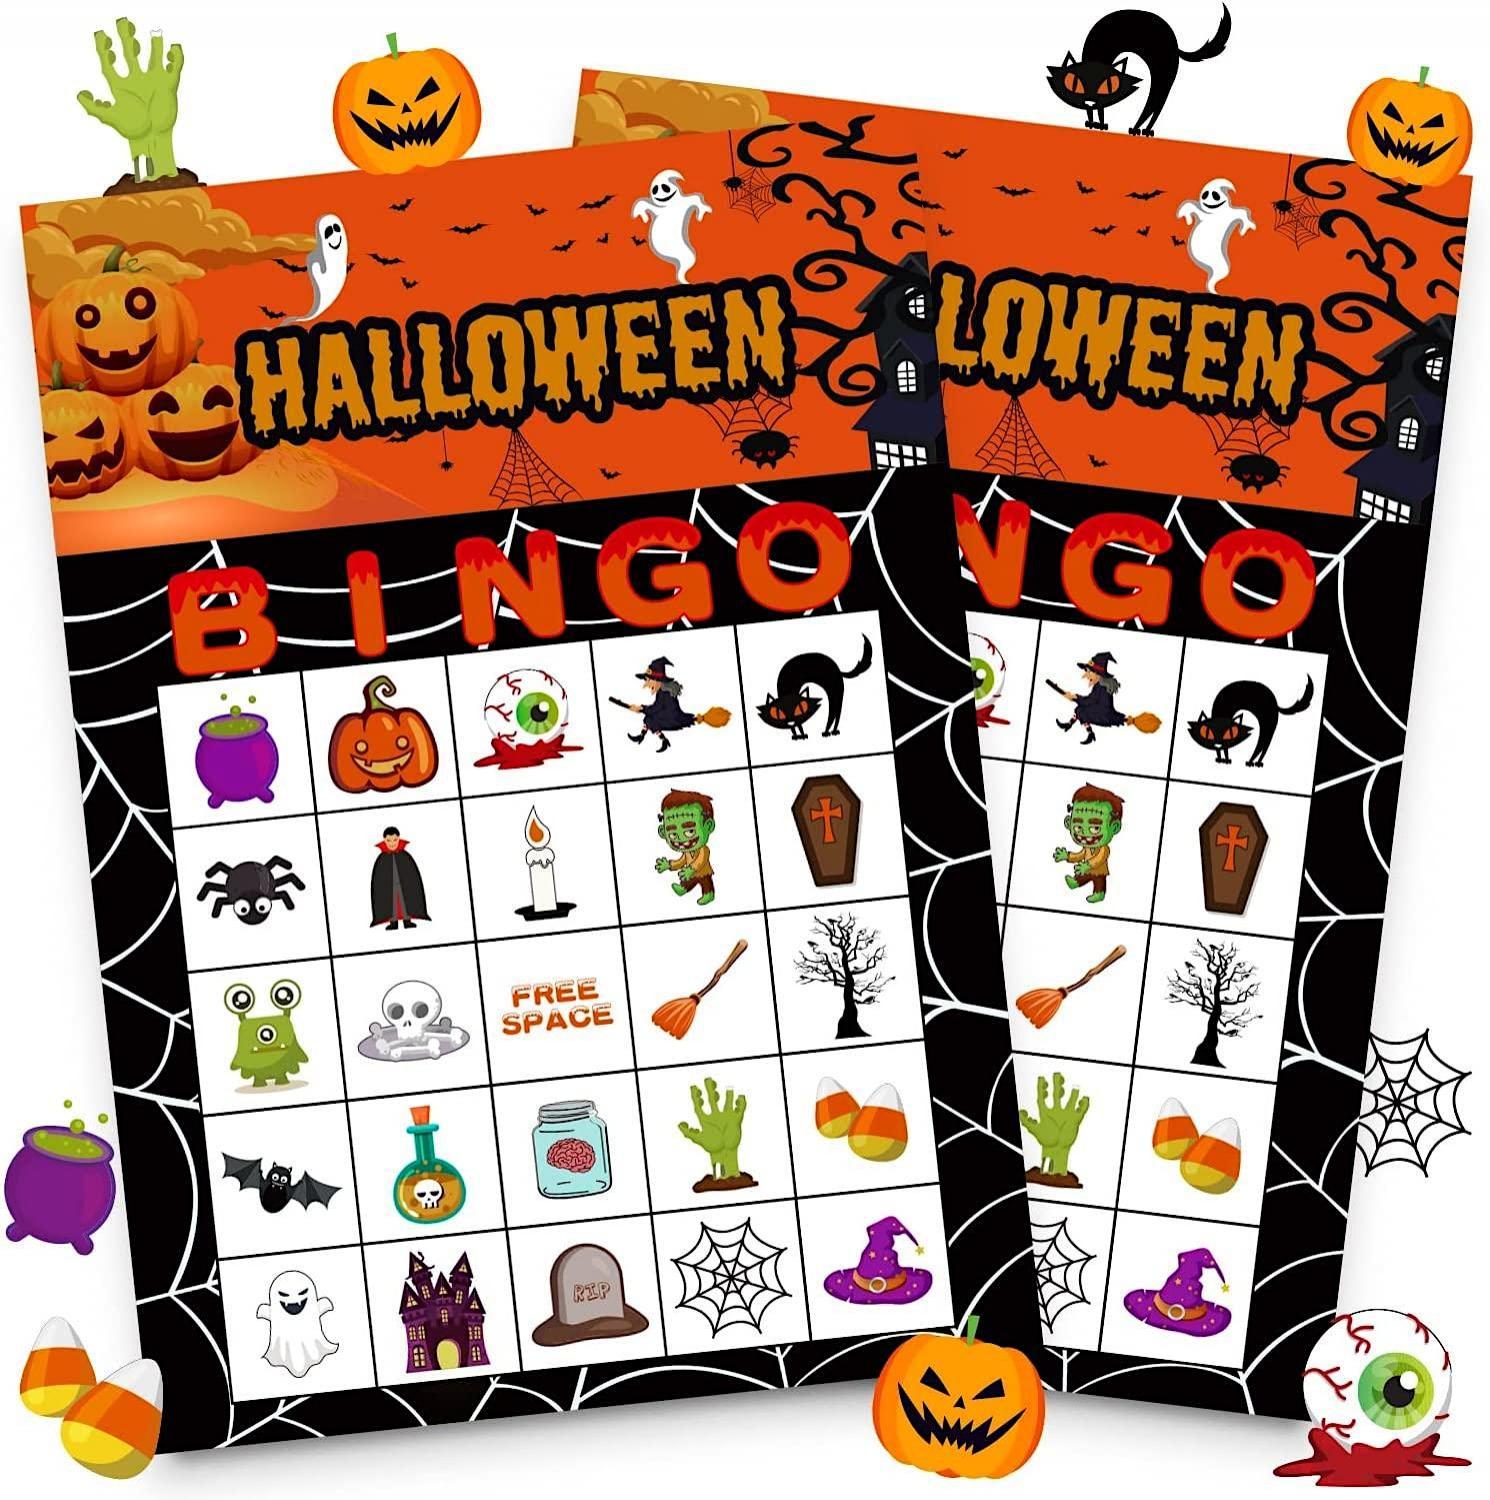 Kids Halloween Bingo in Riverview, FL
Sat Oct 22, 1:00 PM - Sat Oct 22, 3:00 PM
in 2 days